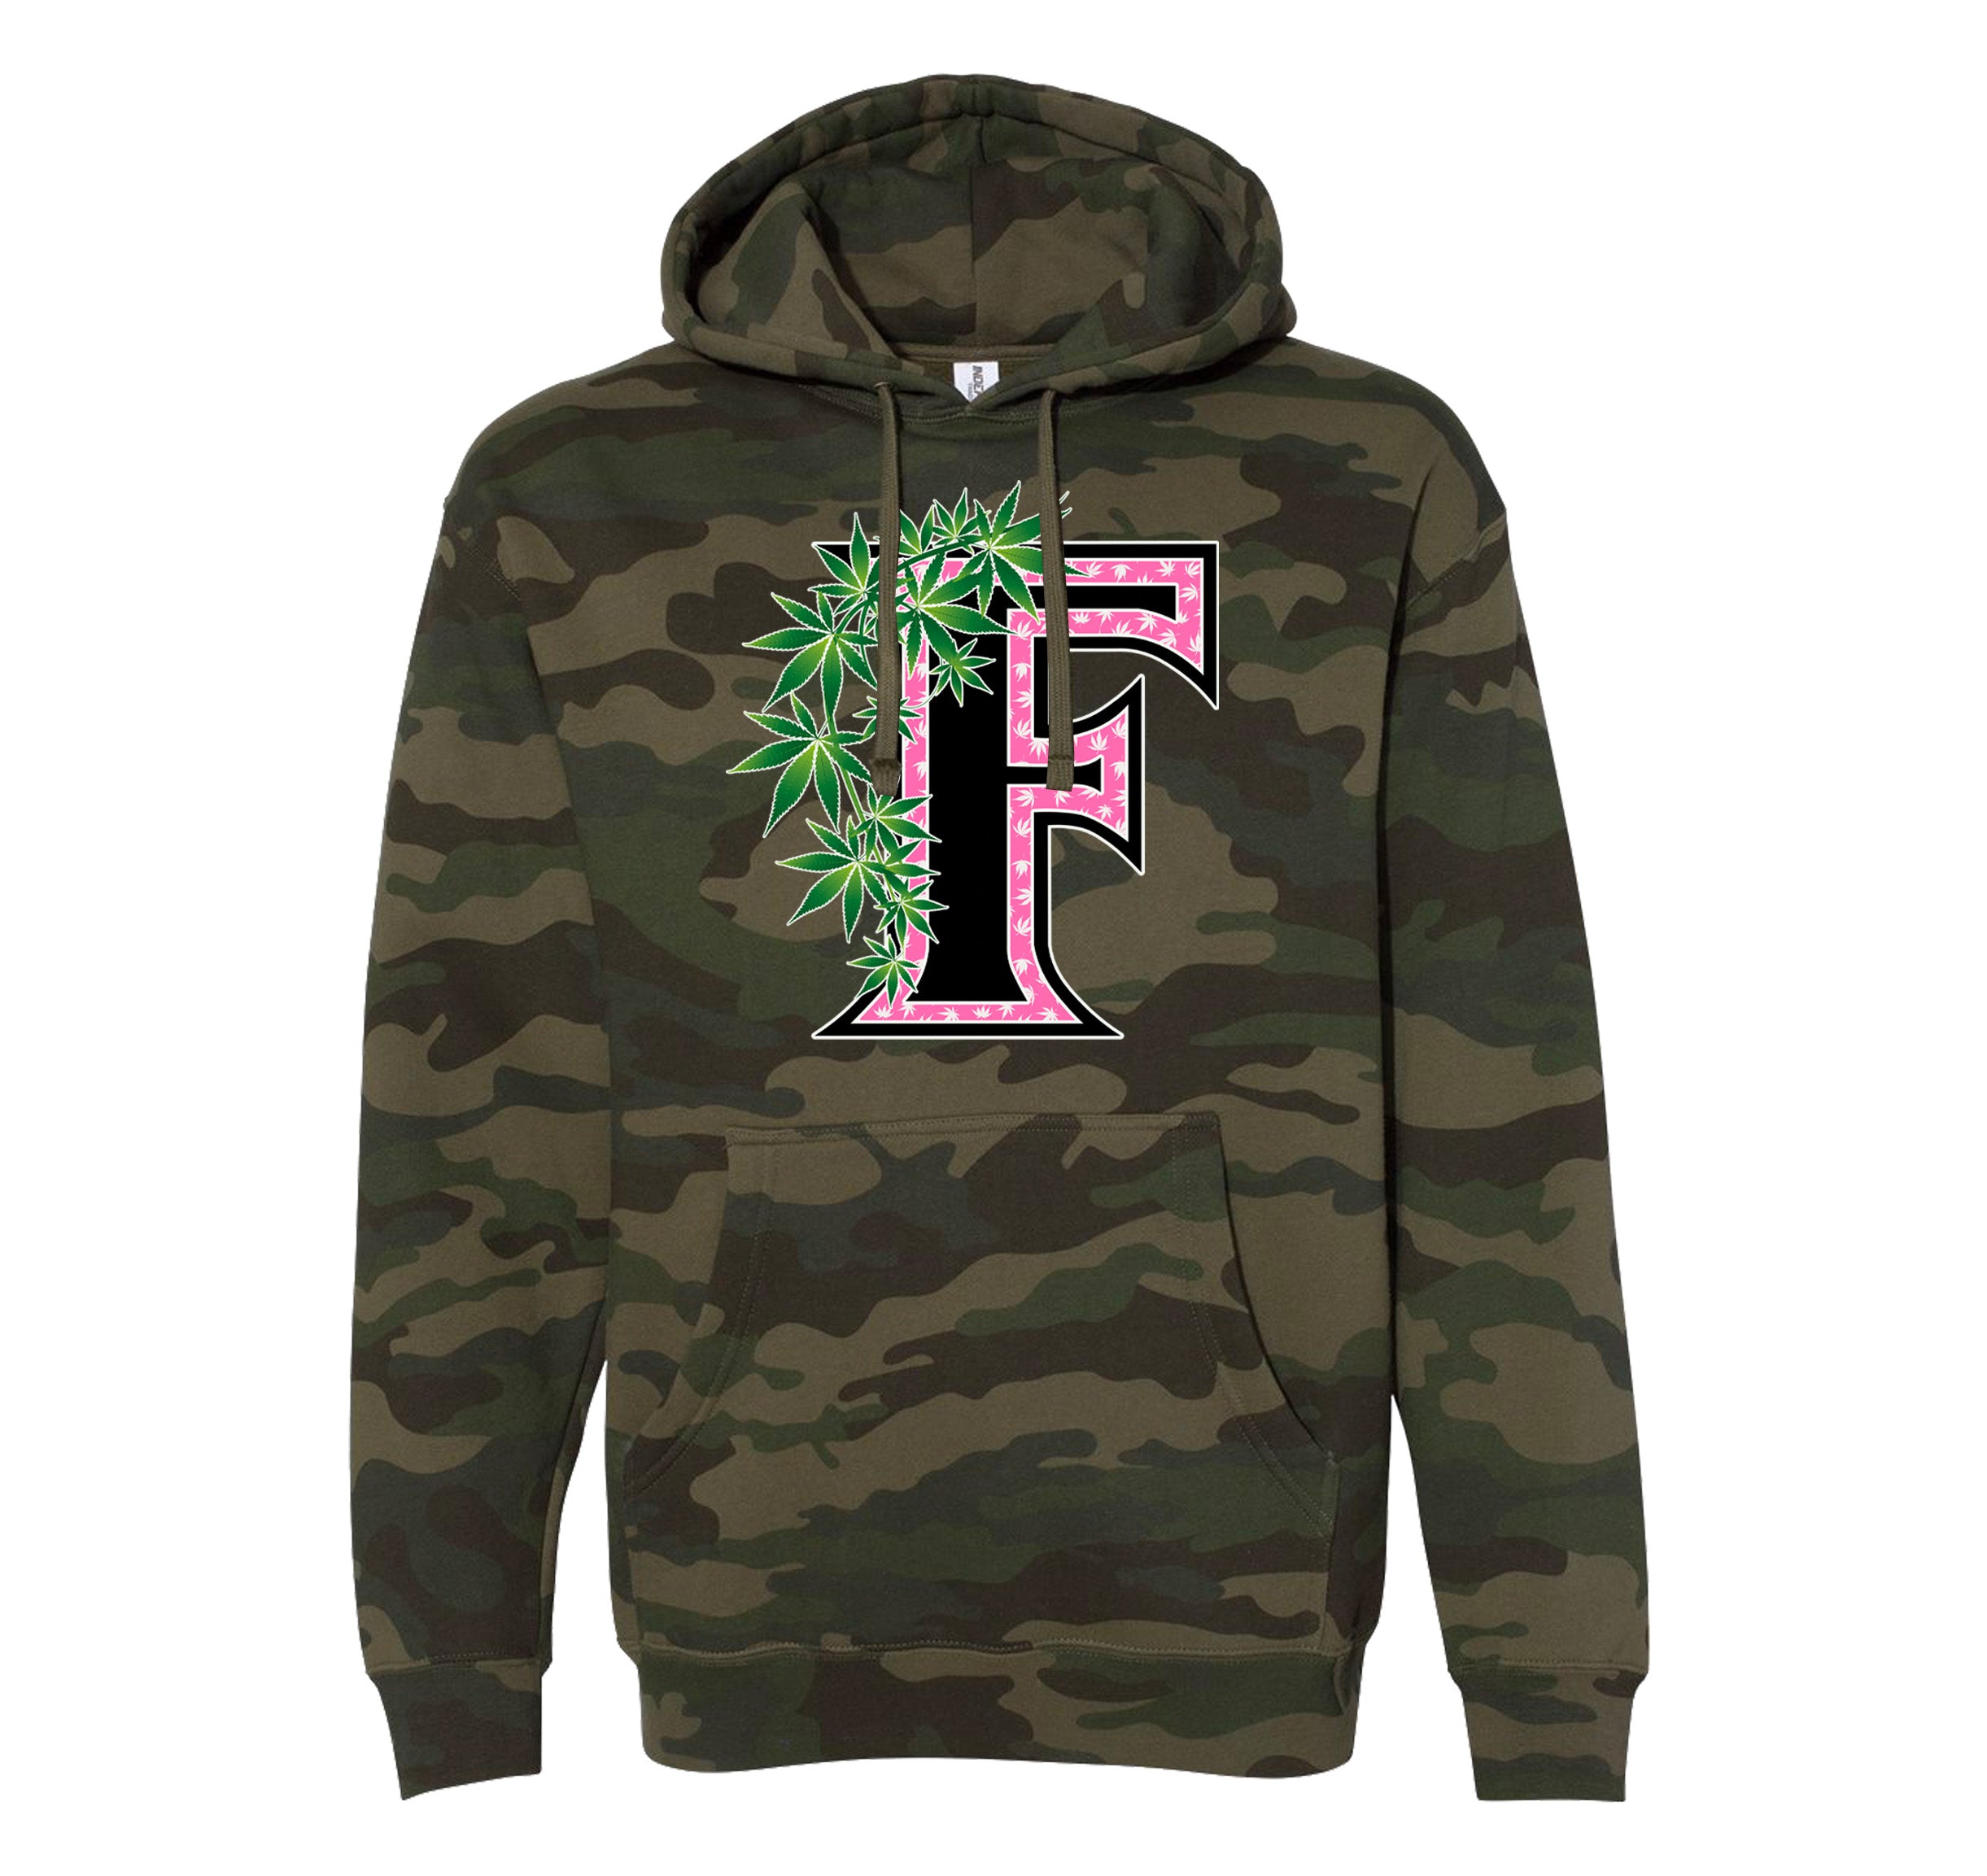 Flee Farms F Pink logo Hoodie